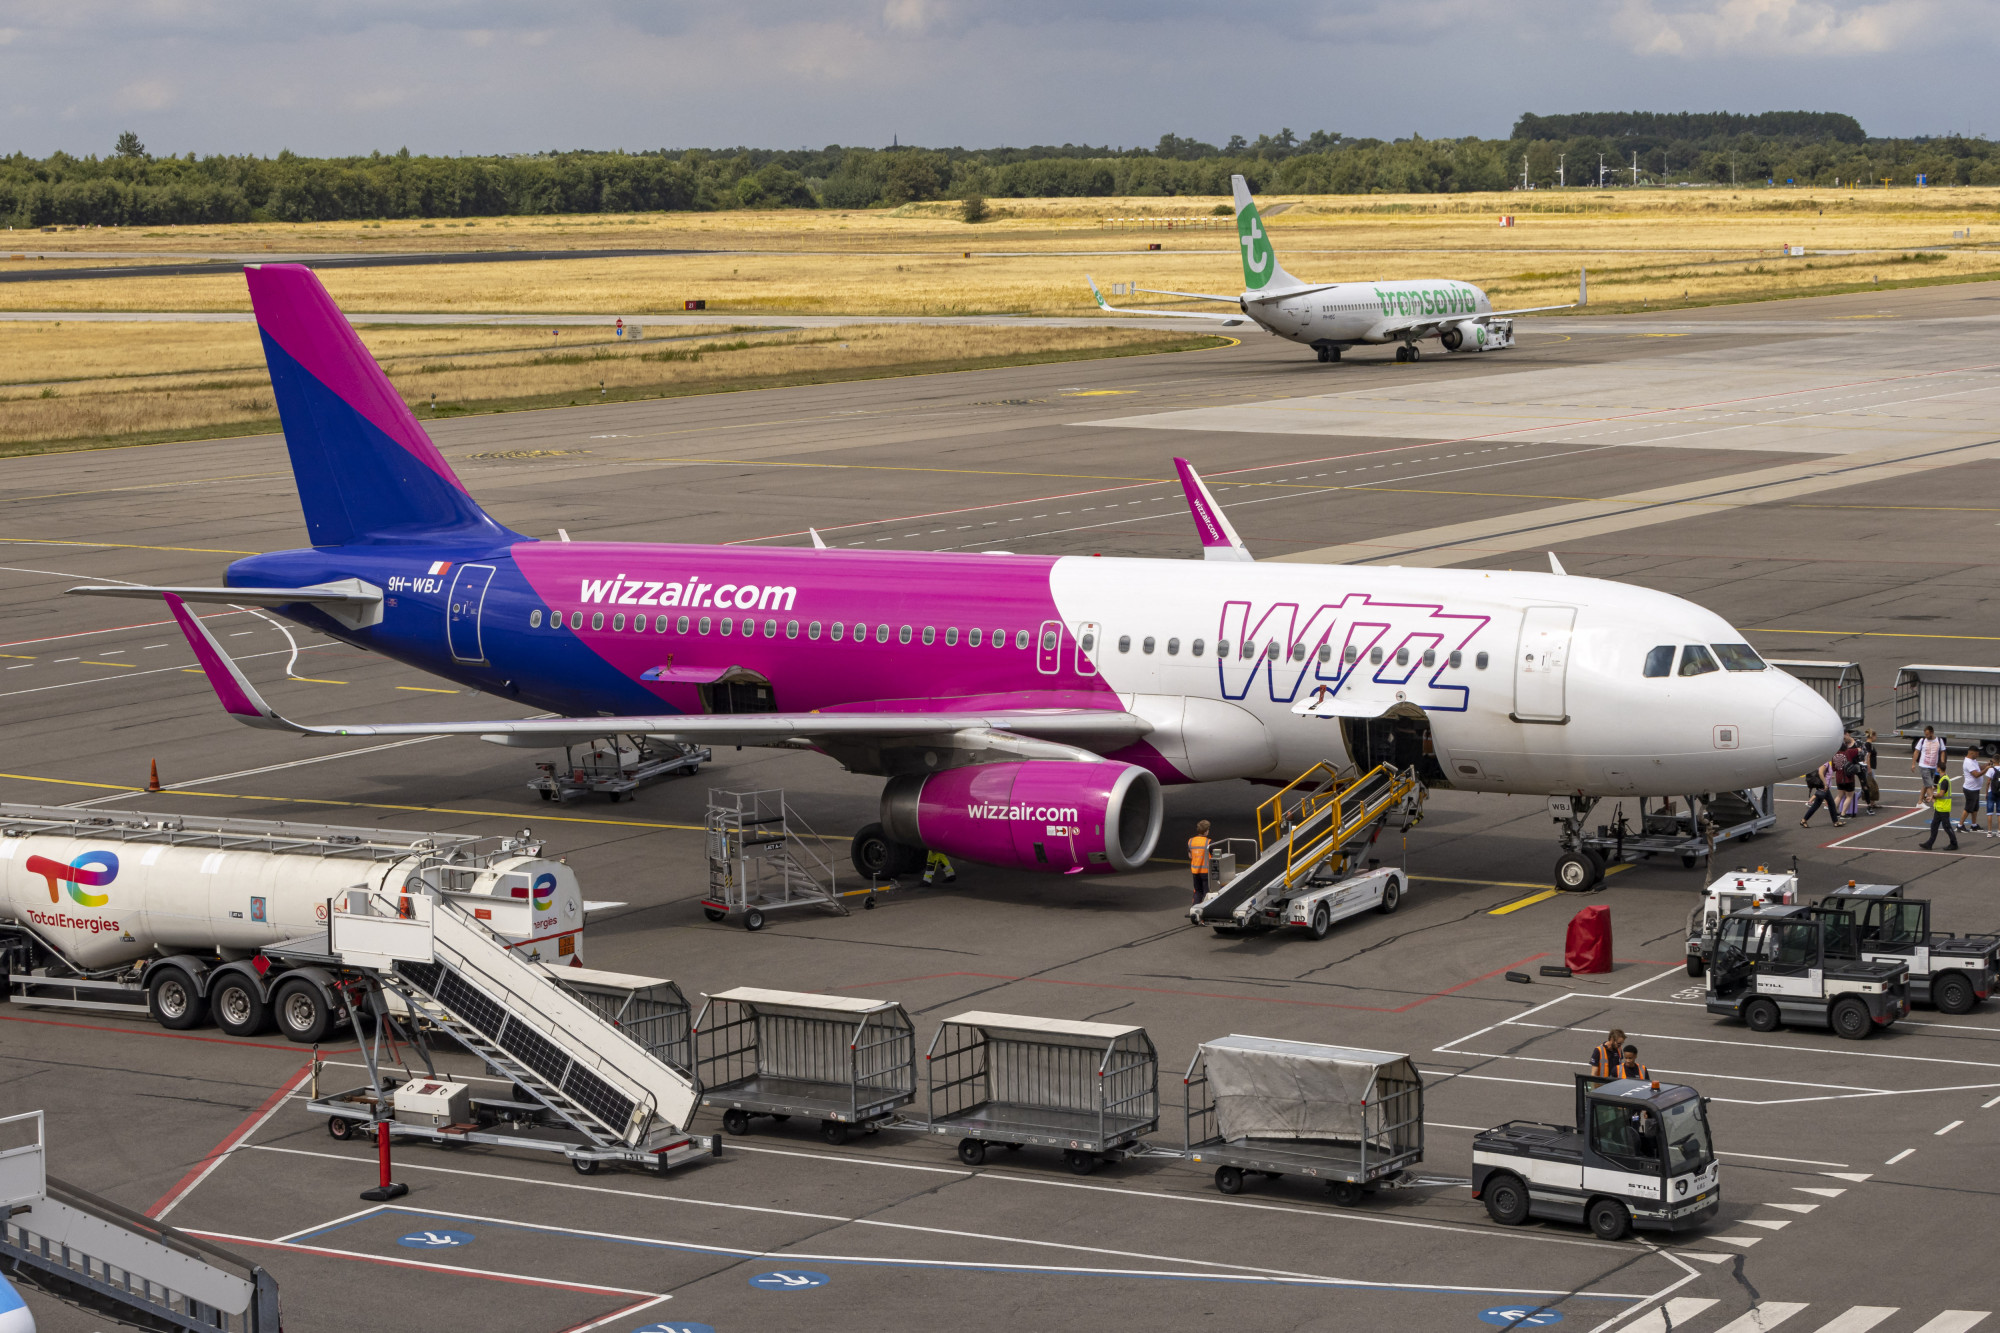 Kényszerleszállást hajtott végre a Wizz Air repülőgépe, amikor ömleni kezdett a vér az egyik utasból